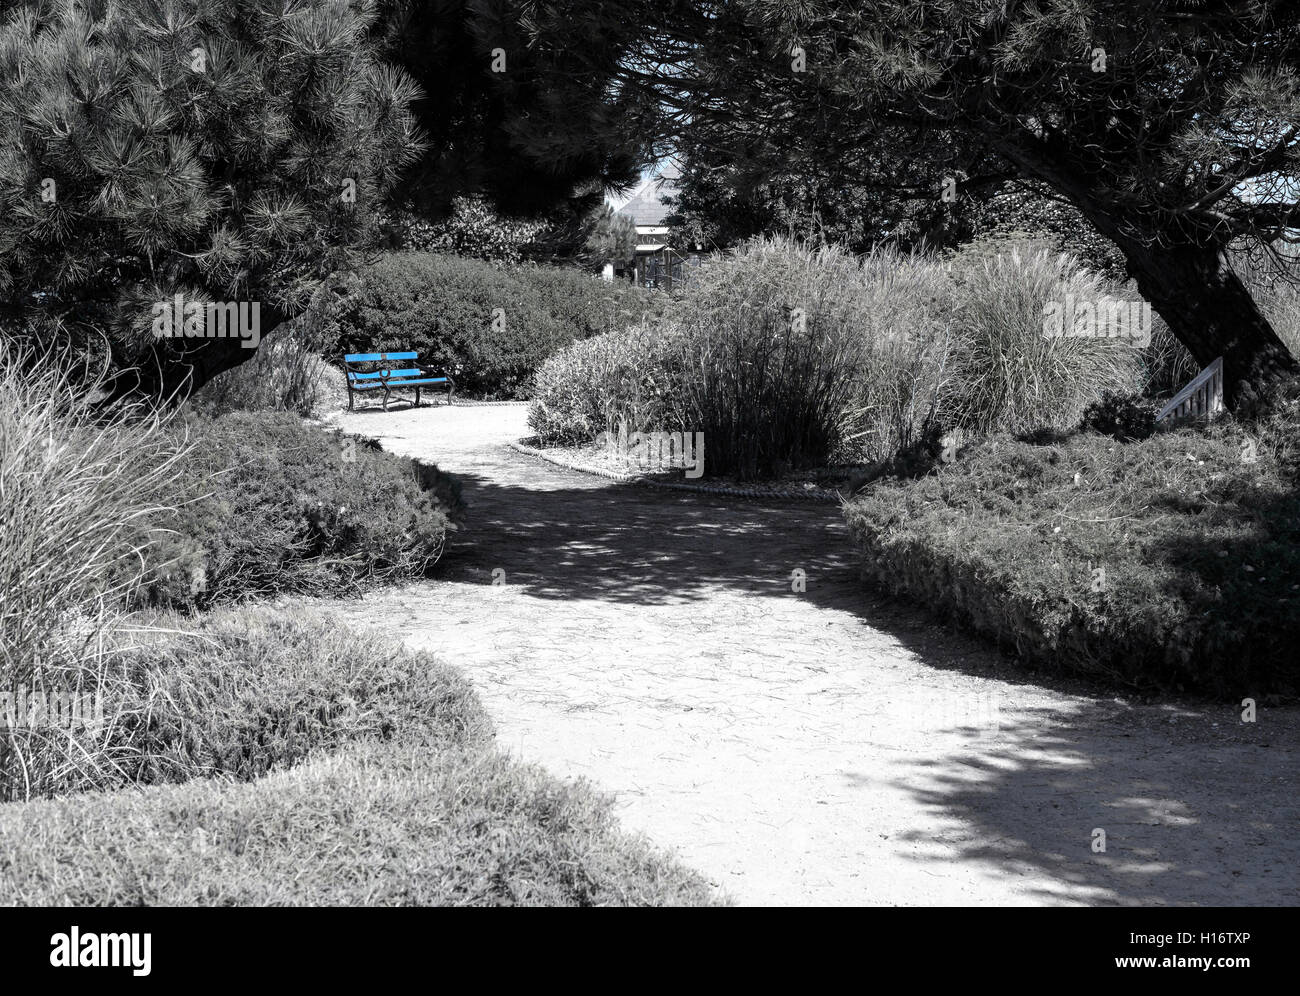 Seul banc peint bleu dans un jardin d'été avec un chemin et entouré d'arbres et arbustes. Banque D'Images